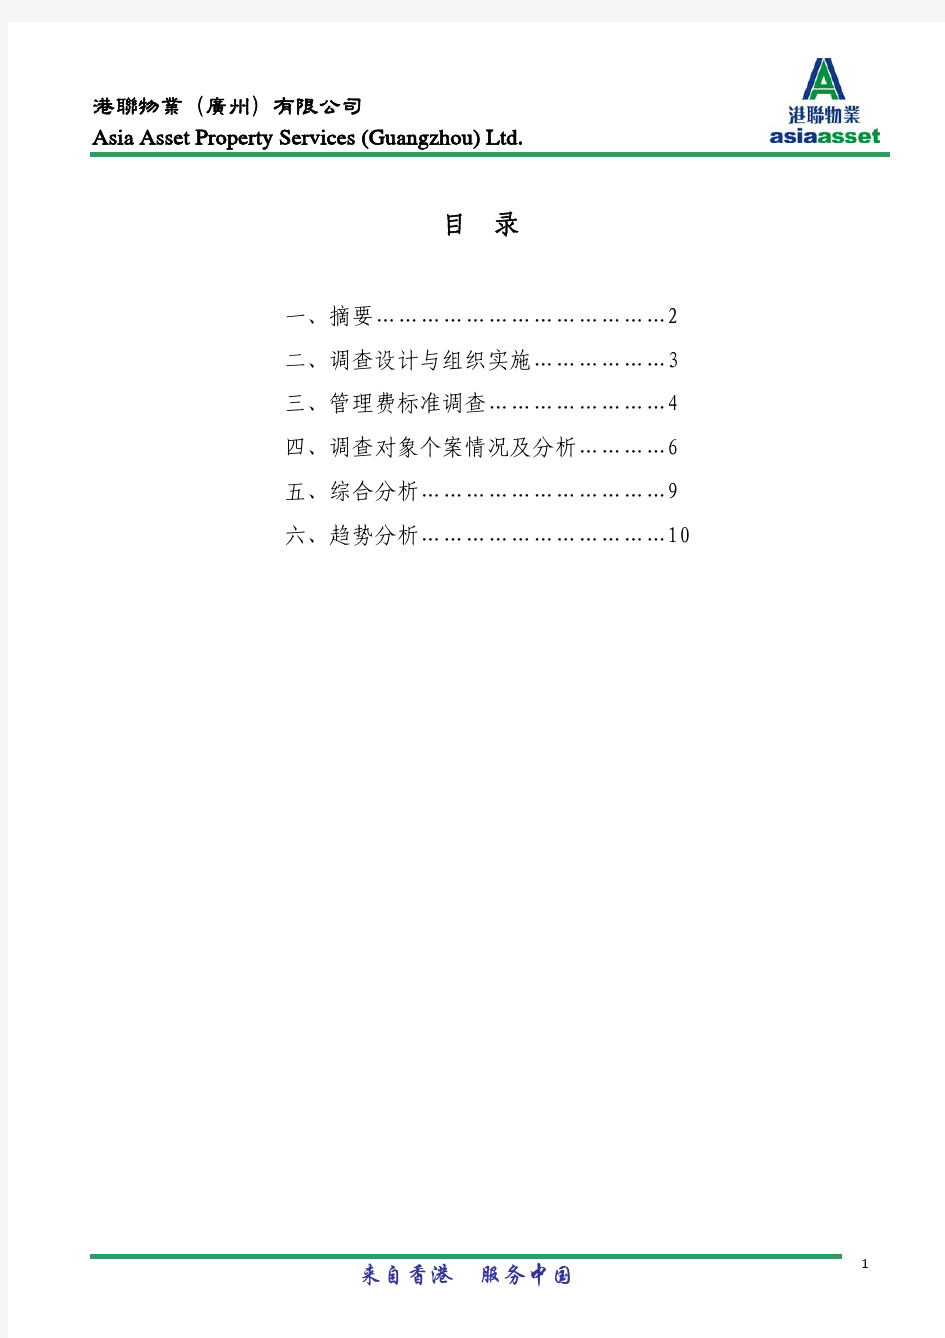 关于广州市珠江新城酒店式服务公寓物业服务收费标准的调查报告-2009